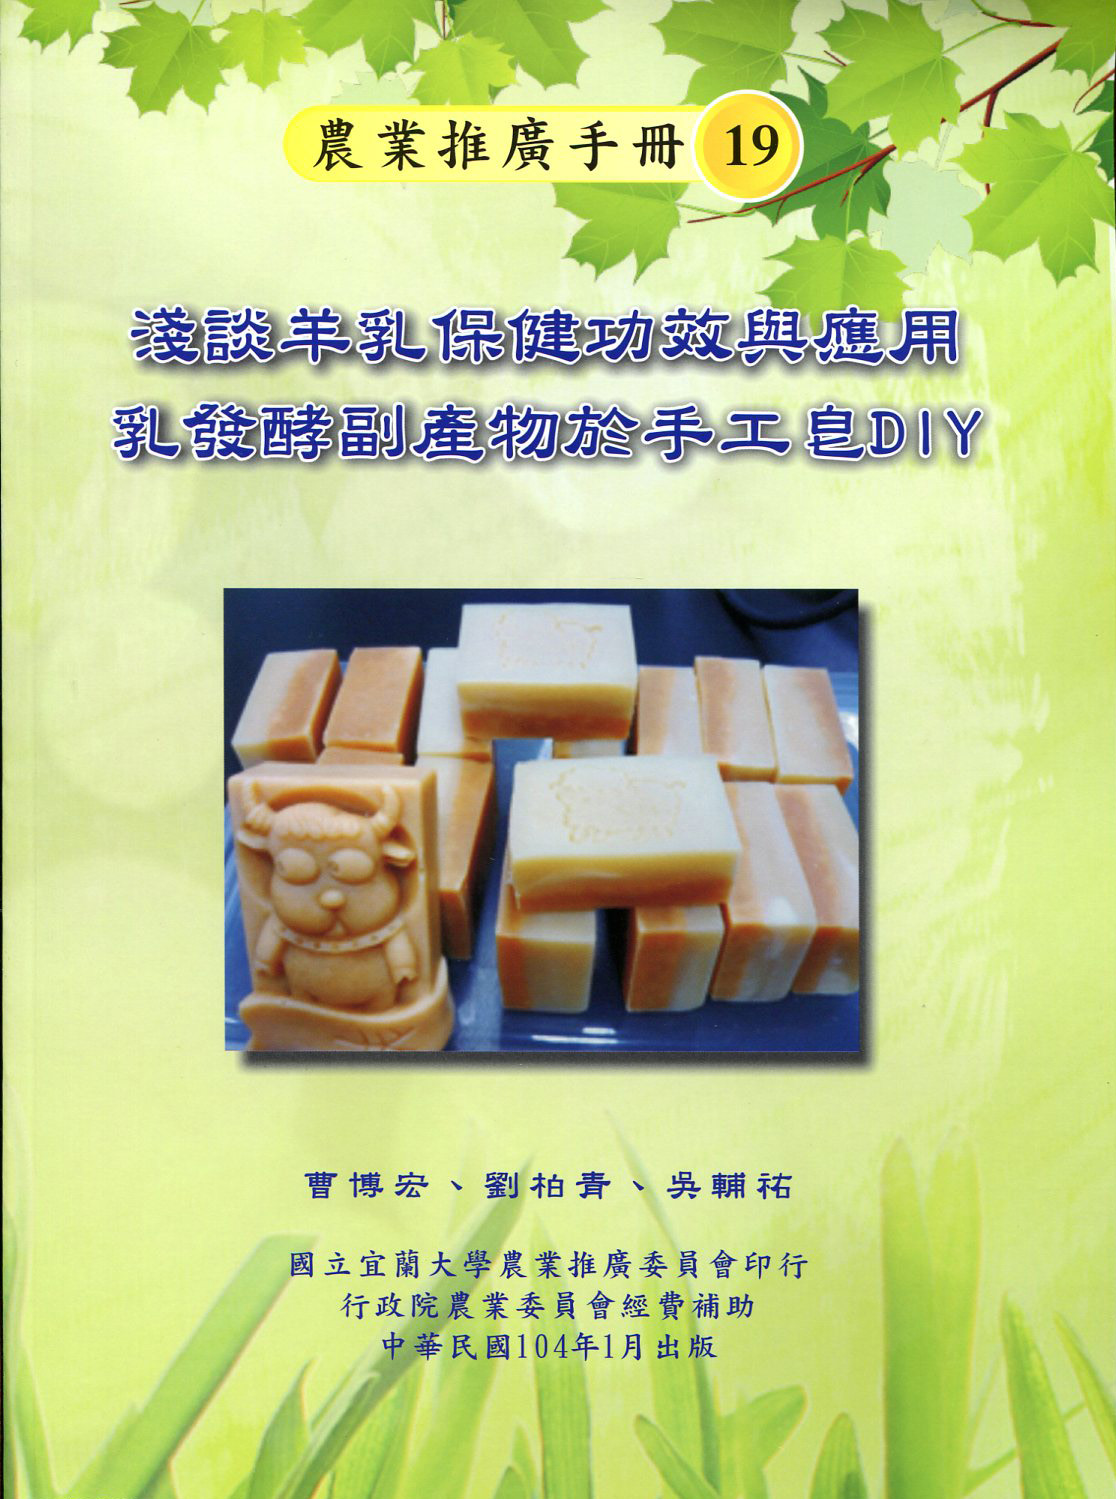 淺談羊乳保健功效與應用乳發酵副產物於手工皂DIY